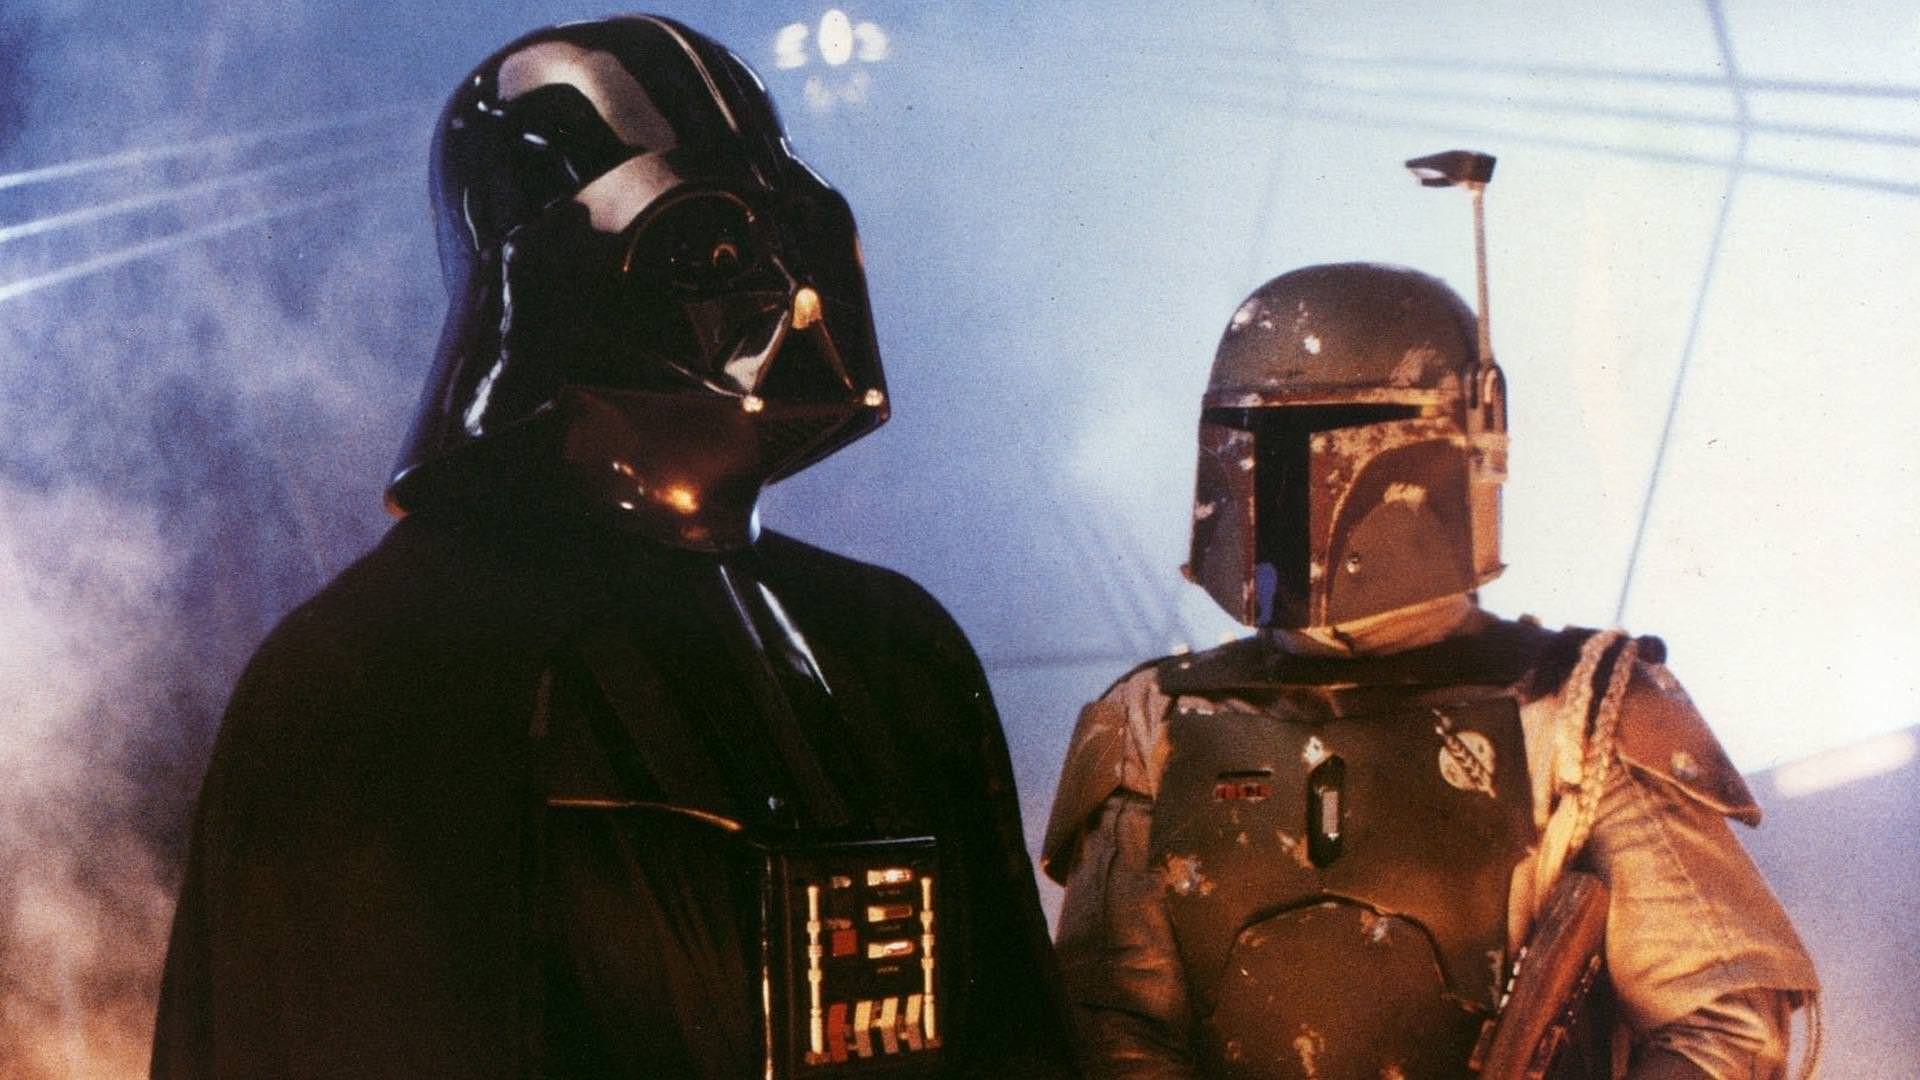 دارث ویدر و بوبا فت در فیلم The Empire Strikes Back 